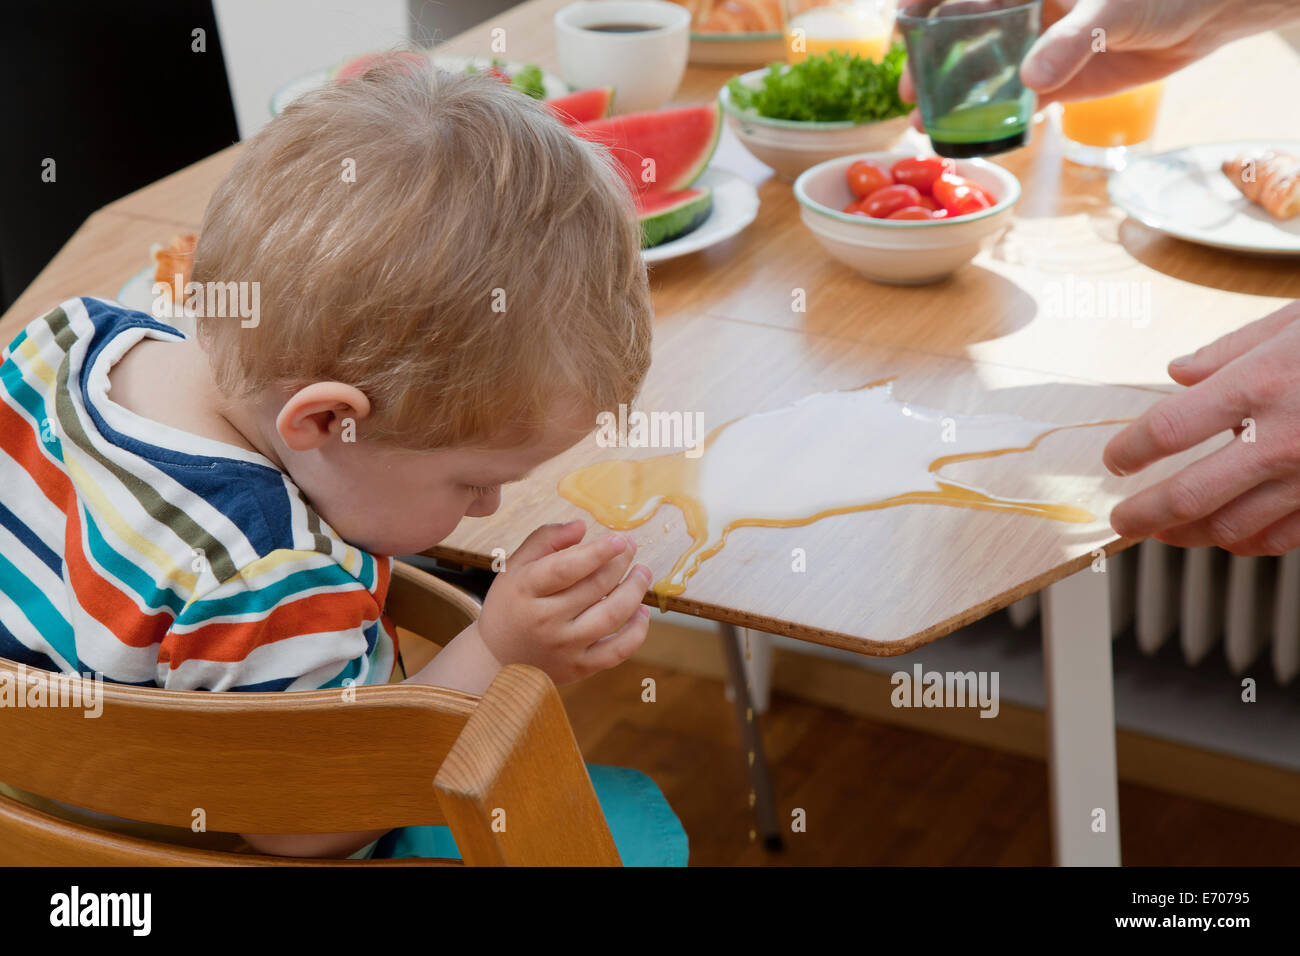 Männliche Kleinkind Accidentallyspilling orange Saft am Frühstückstisch Stockfoto